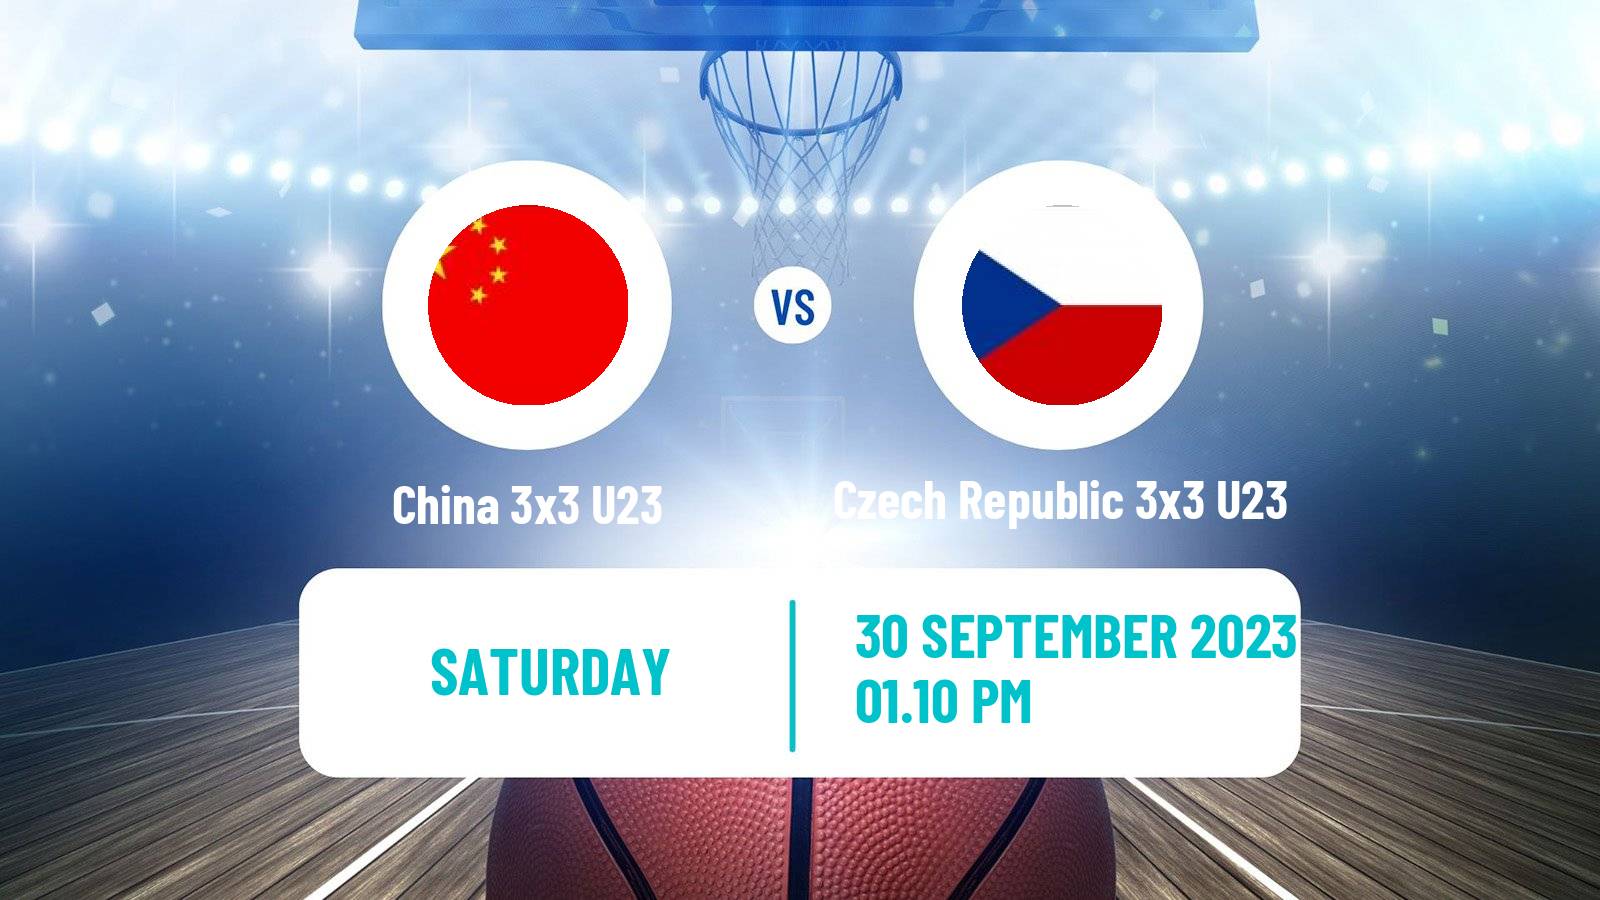 Basketball World Cup Basketball 3x3 U23 China 3x3 U23 - Czech Republic 3x3 U23